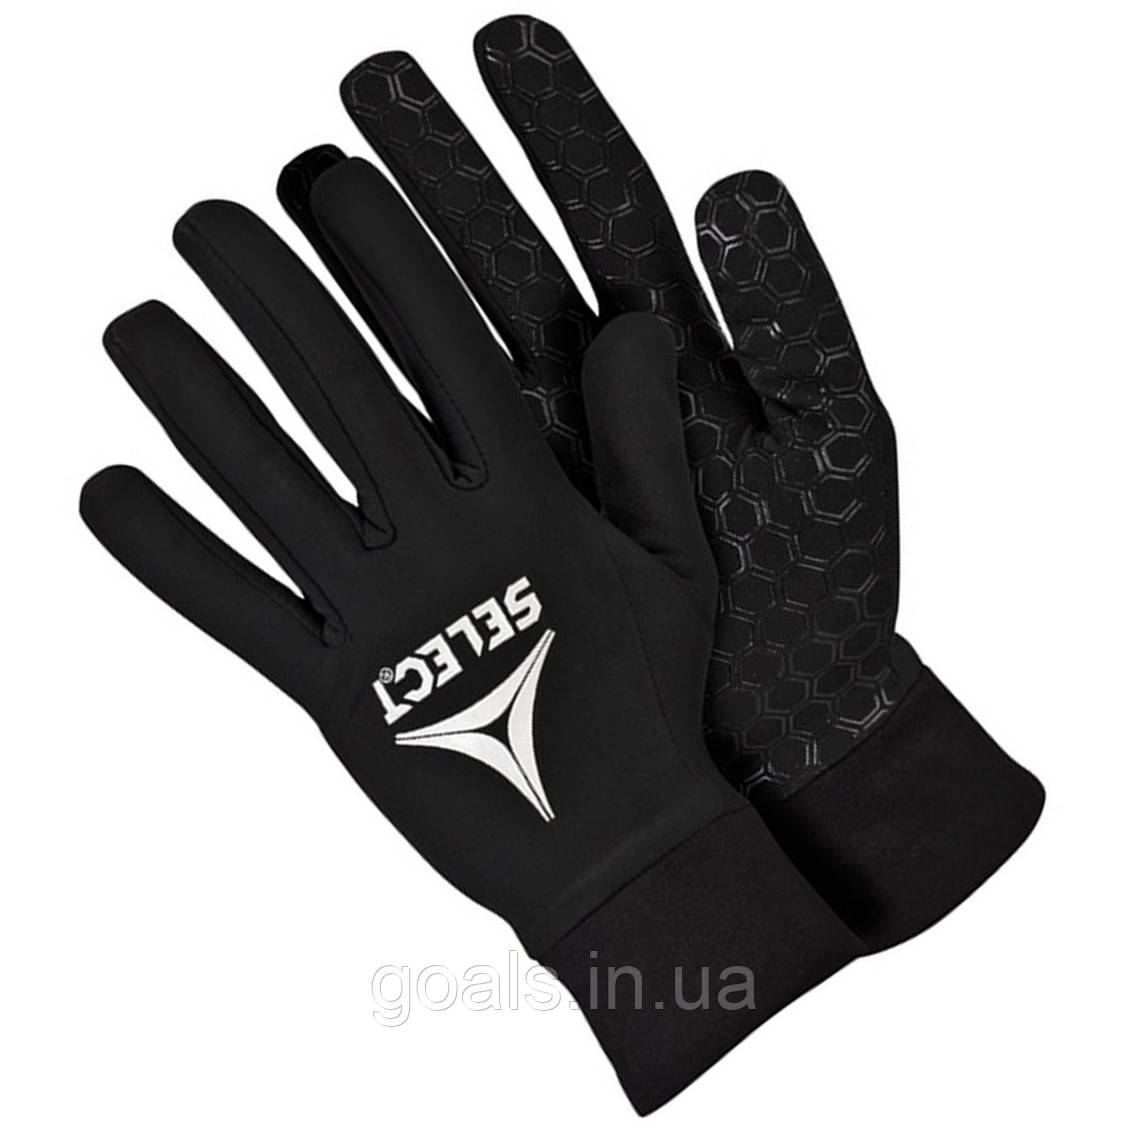 Рукавиці ігрові SELECT Players Gloves (009) чорний, р. 7 (XS)